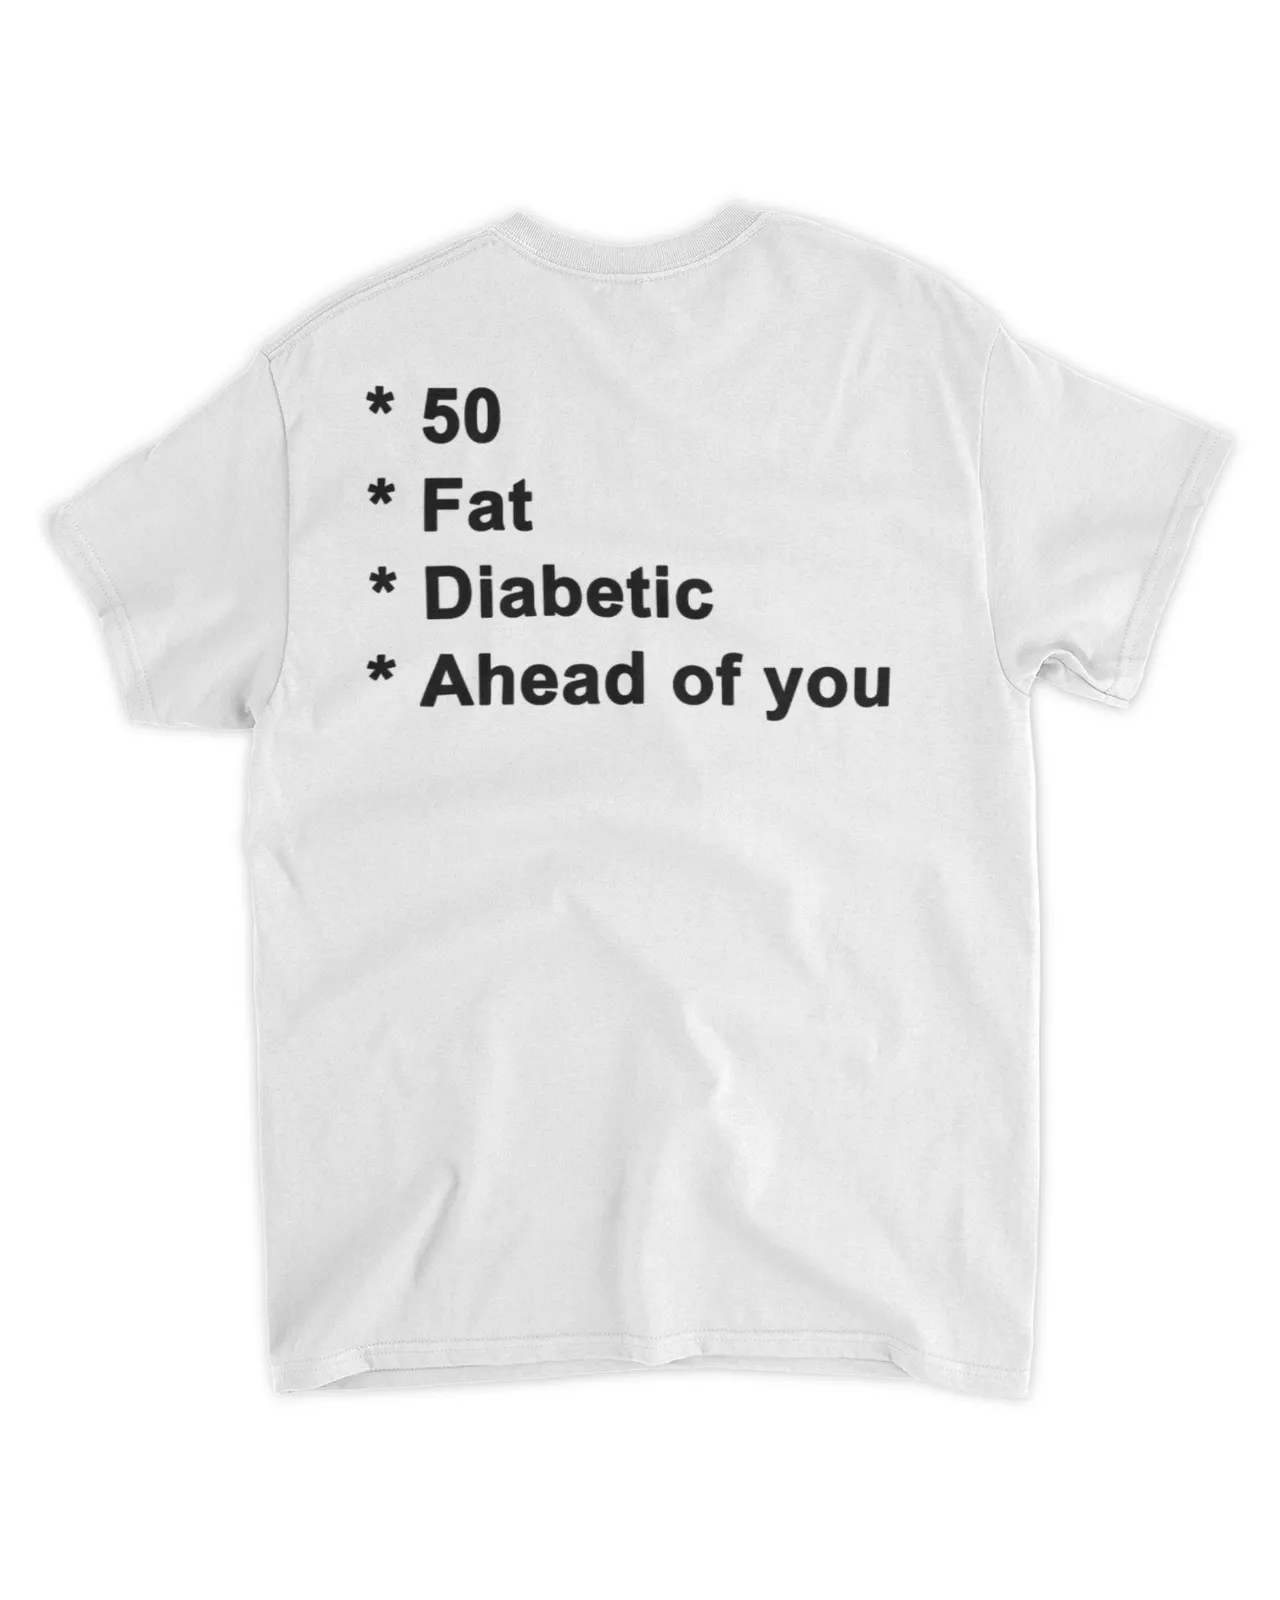  50 fat diabetic ahead of you shirt